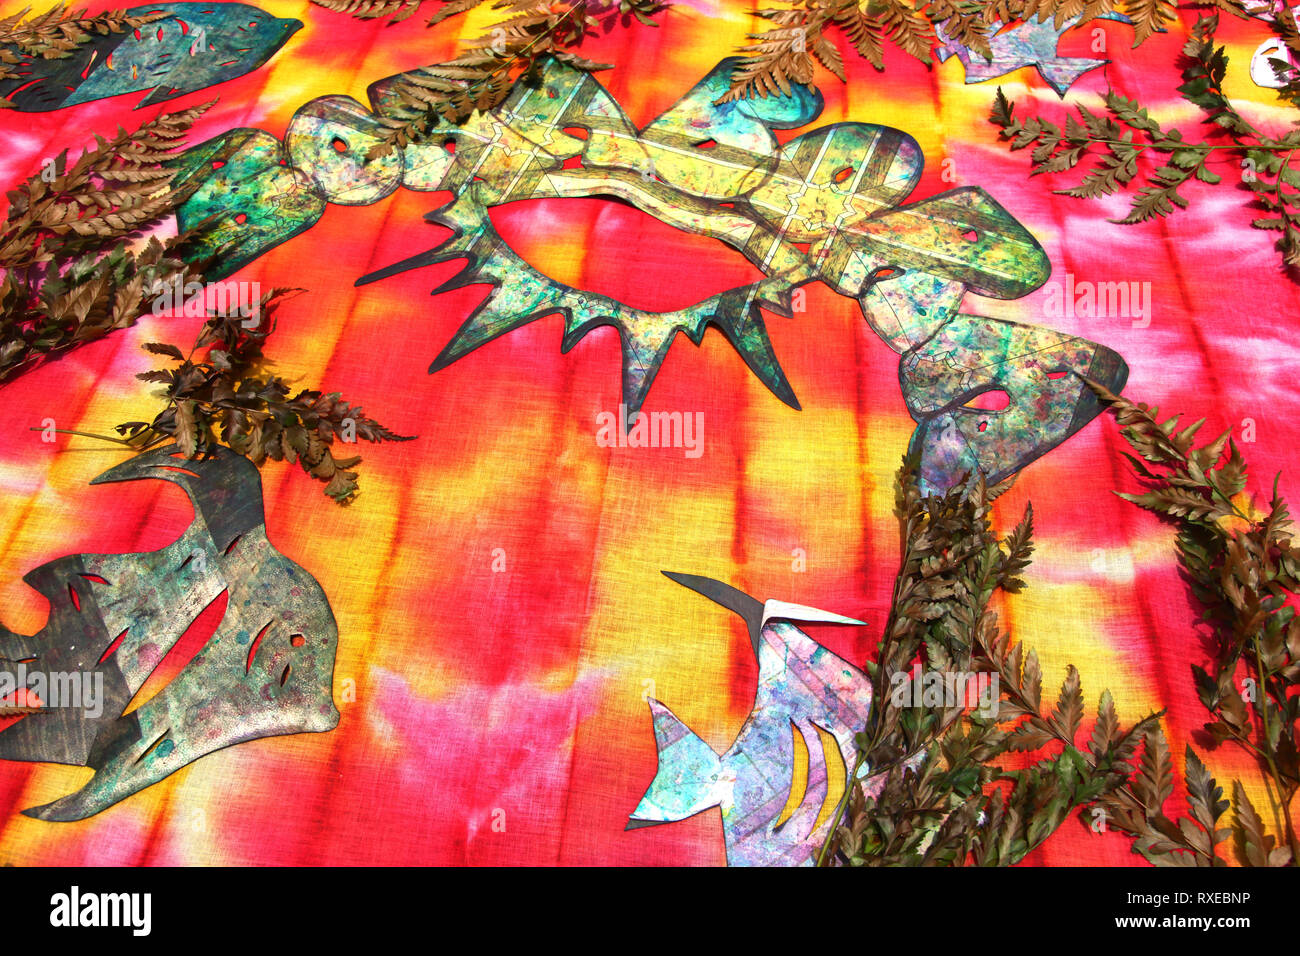 Tessuto colorato con foglie, felci & forme di carta ritagliata demonstraiting come creare tie dye progetta, Bora Bora, Polinesia francese. Foto Stock